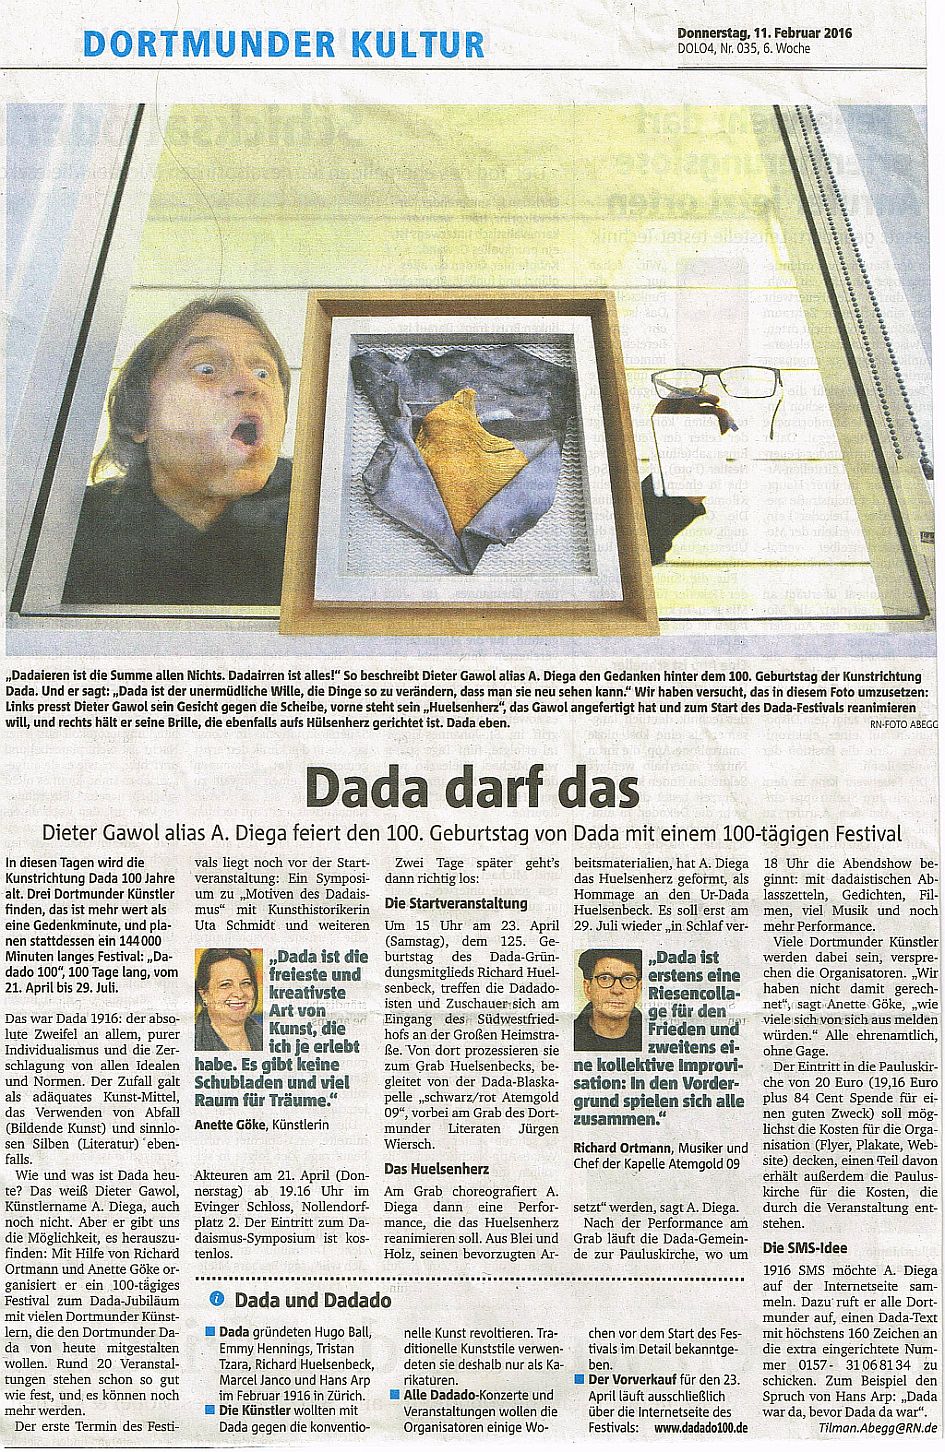 DADA darf das – Dortmunder Ruhrnachrichten vom 11.02.16